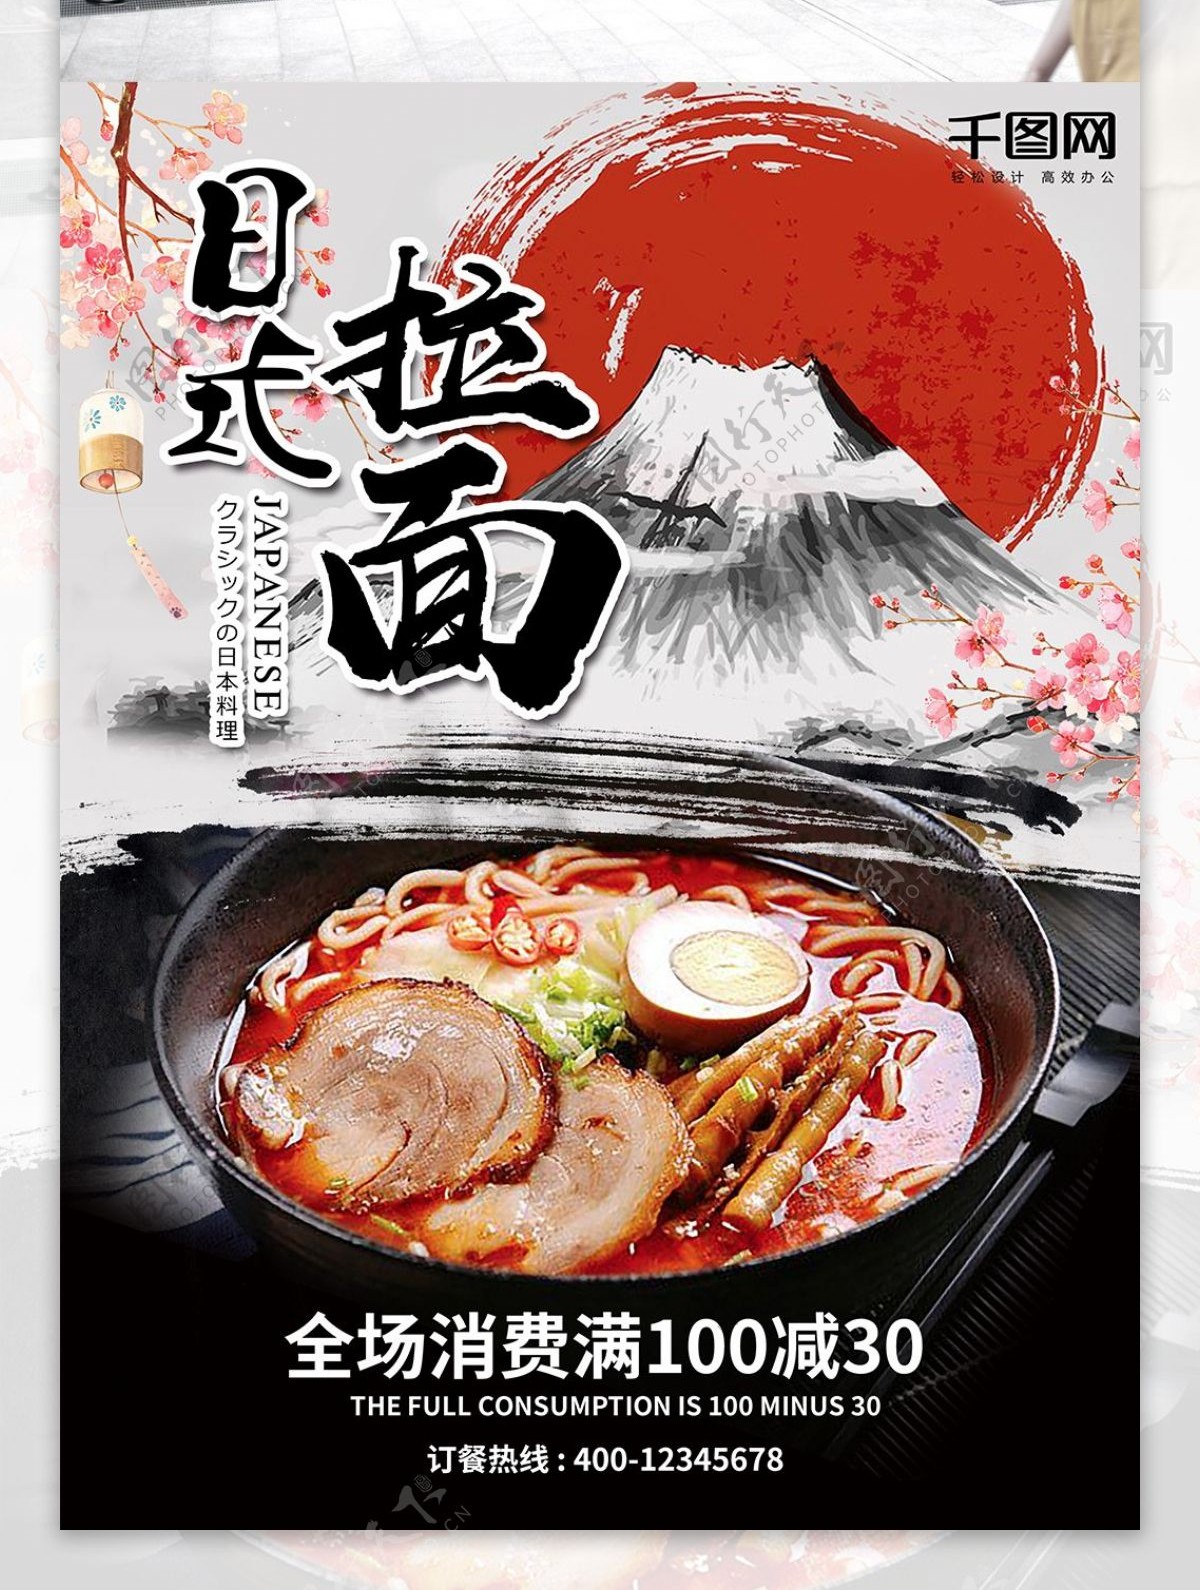 日本料理日式拉面宣传单海报模版